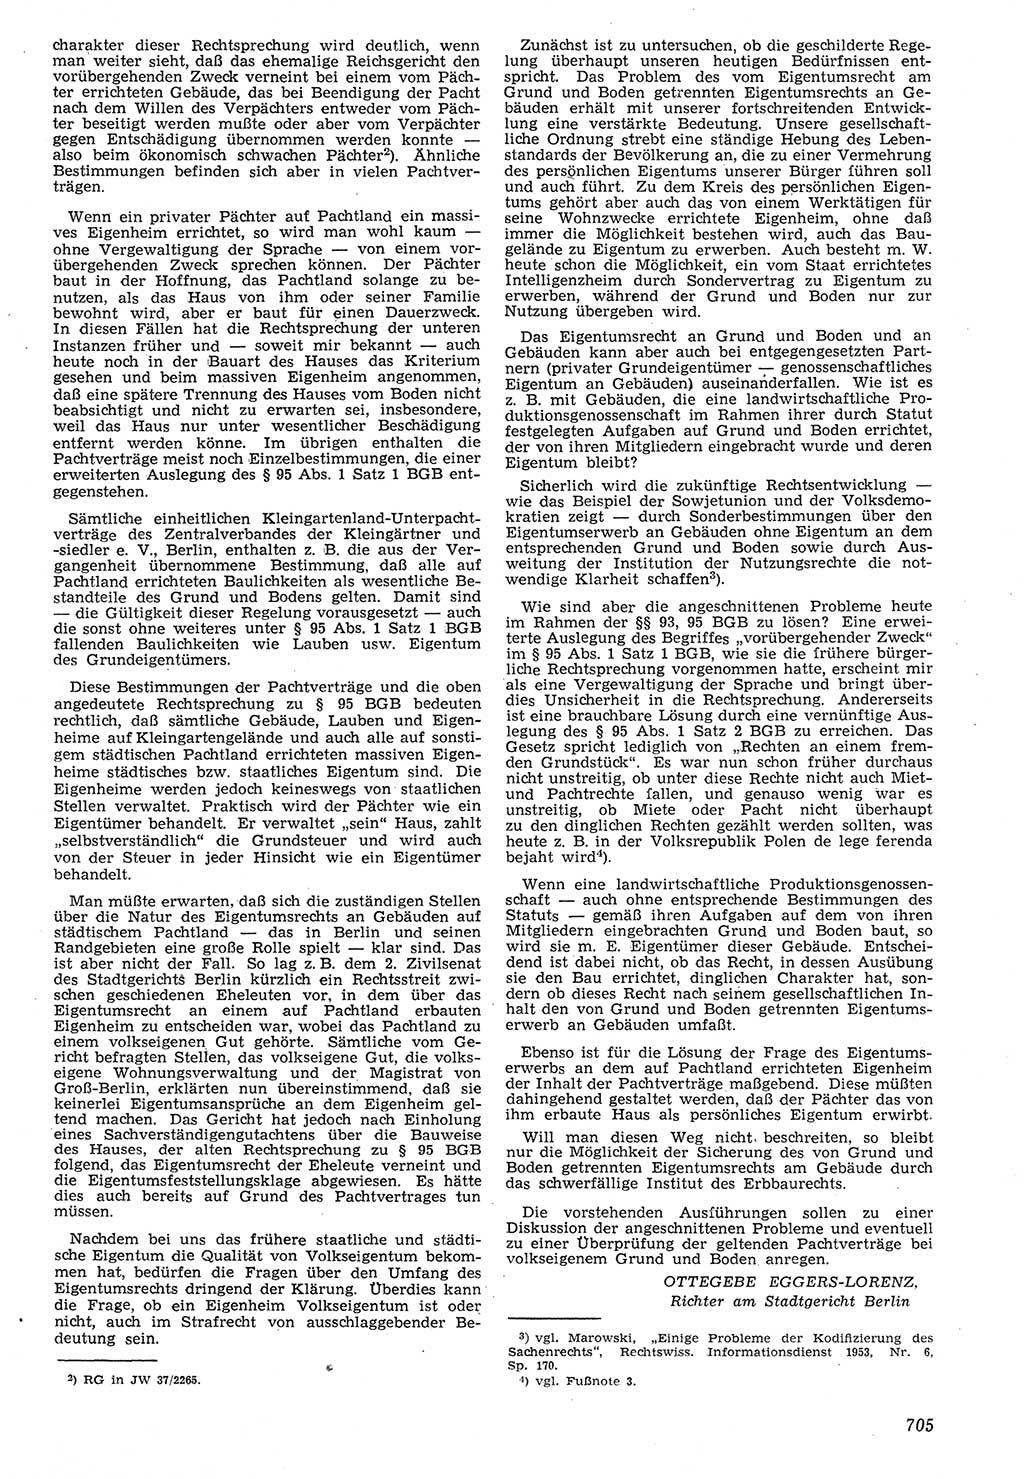 Neue Justiz (NJ), Zeitschrift für Recht und Rechtswissenschaft [Deutsche Demokratische Republik (DDR)], 7. Jahrgang 1953, Seite 705 (NJ DDR 1953, S. 705)